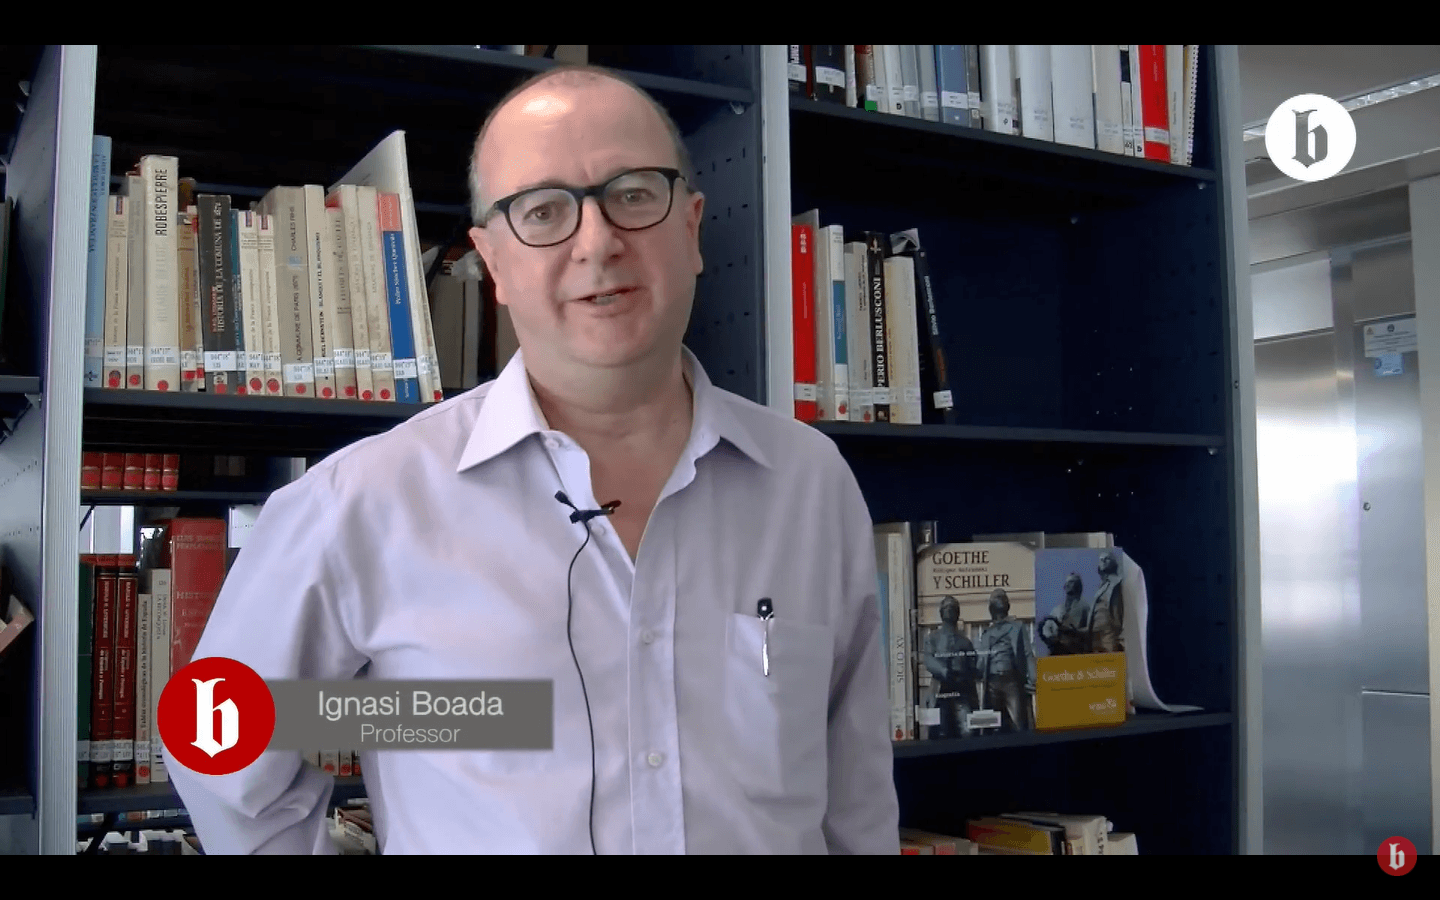 Ignasi Boada presenta Goethe y Schiller historia de una amistad de Rüdiger Safranski Booktube